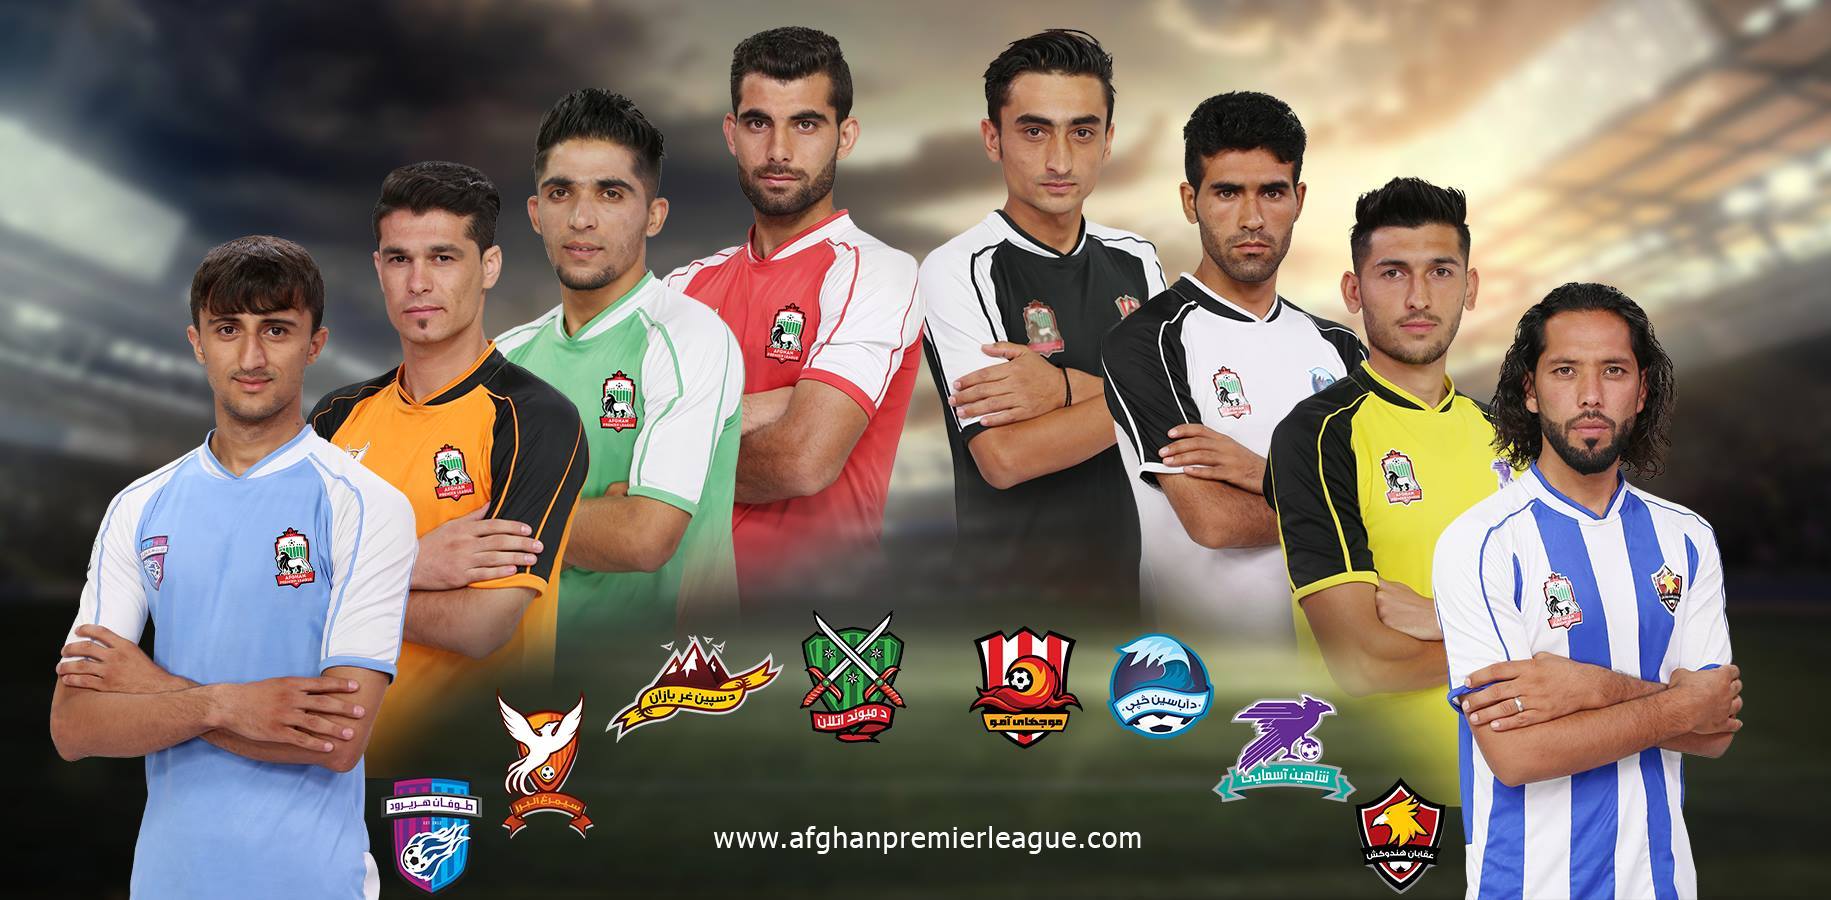 Una imagen promocional de la Liga de Afganistn